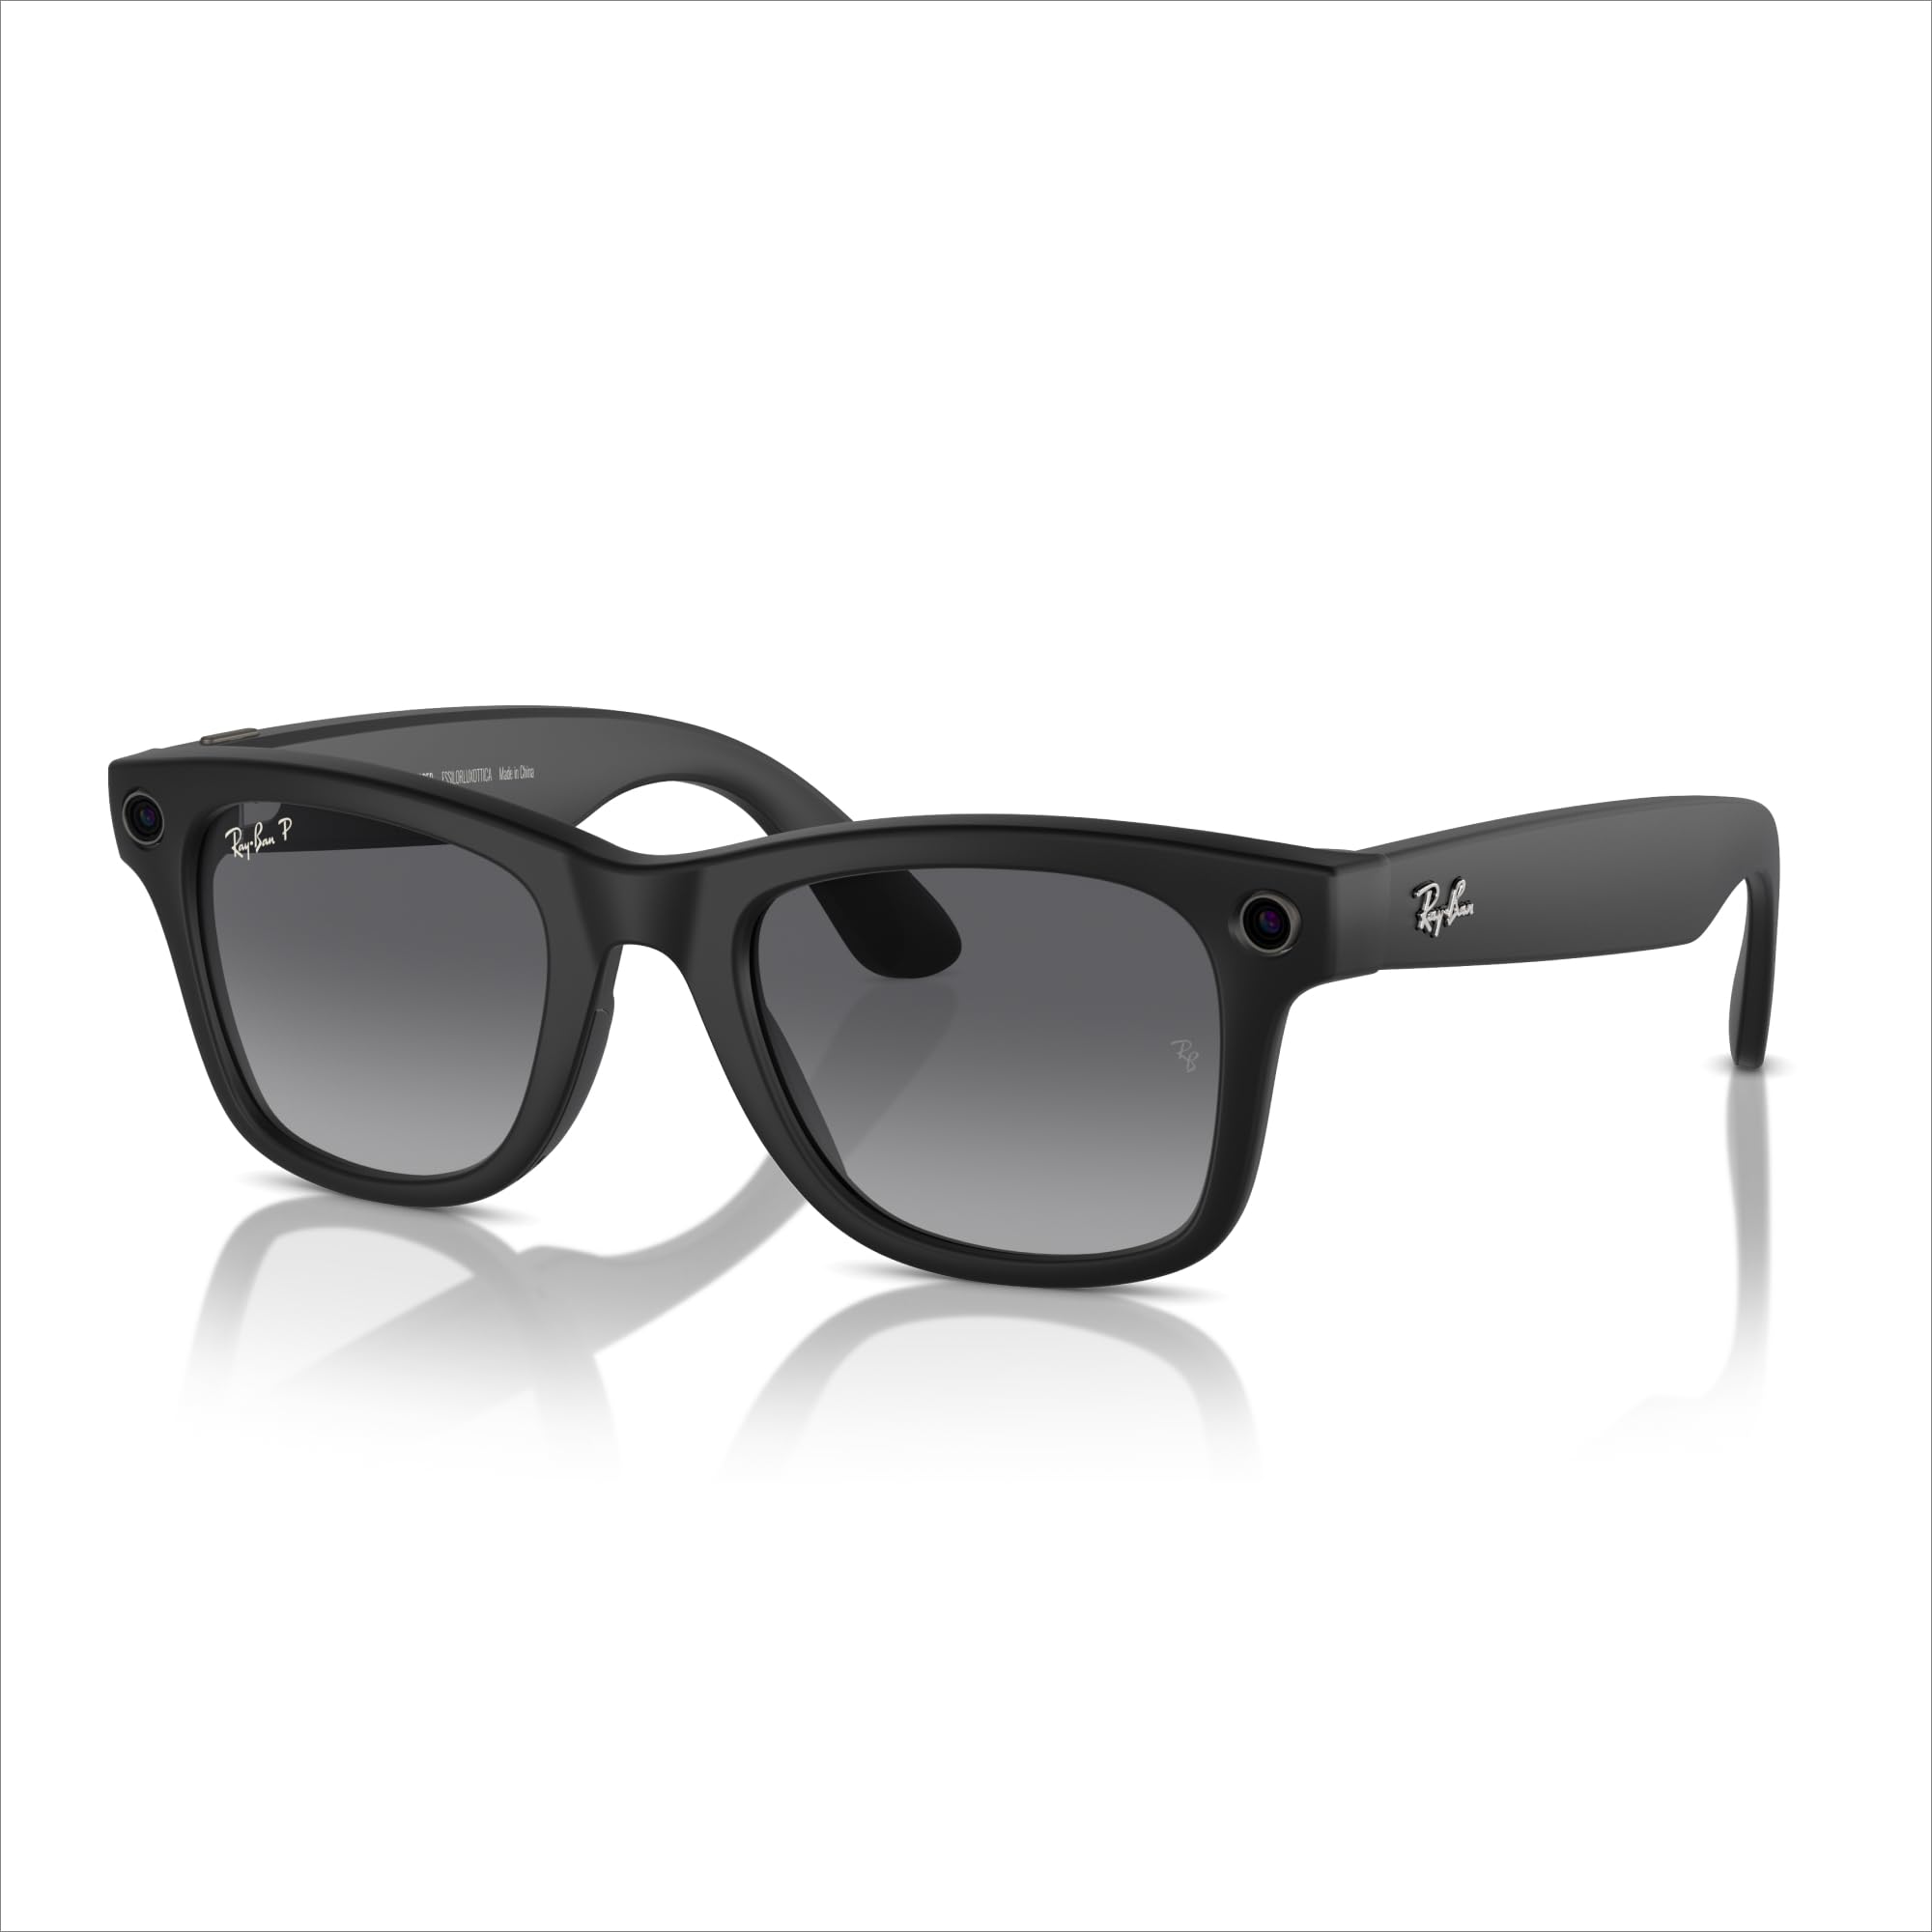 Ray-Ban - Meta Smart Glasses - Wayfarer - Matte Black/Polarized Gradient Graphite Wayfarer Polarized Matte Black/ Polarized Gradient Graphite, Now Only $329